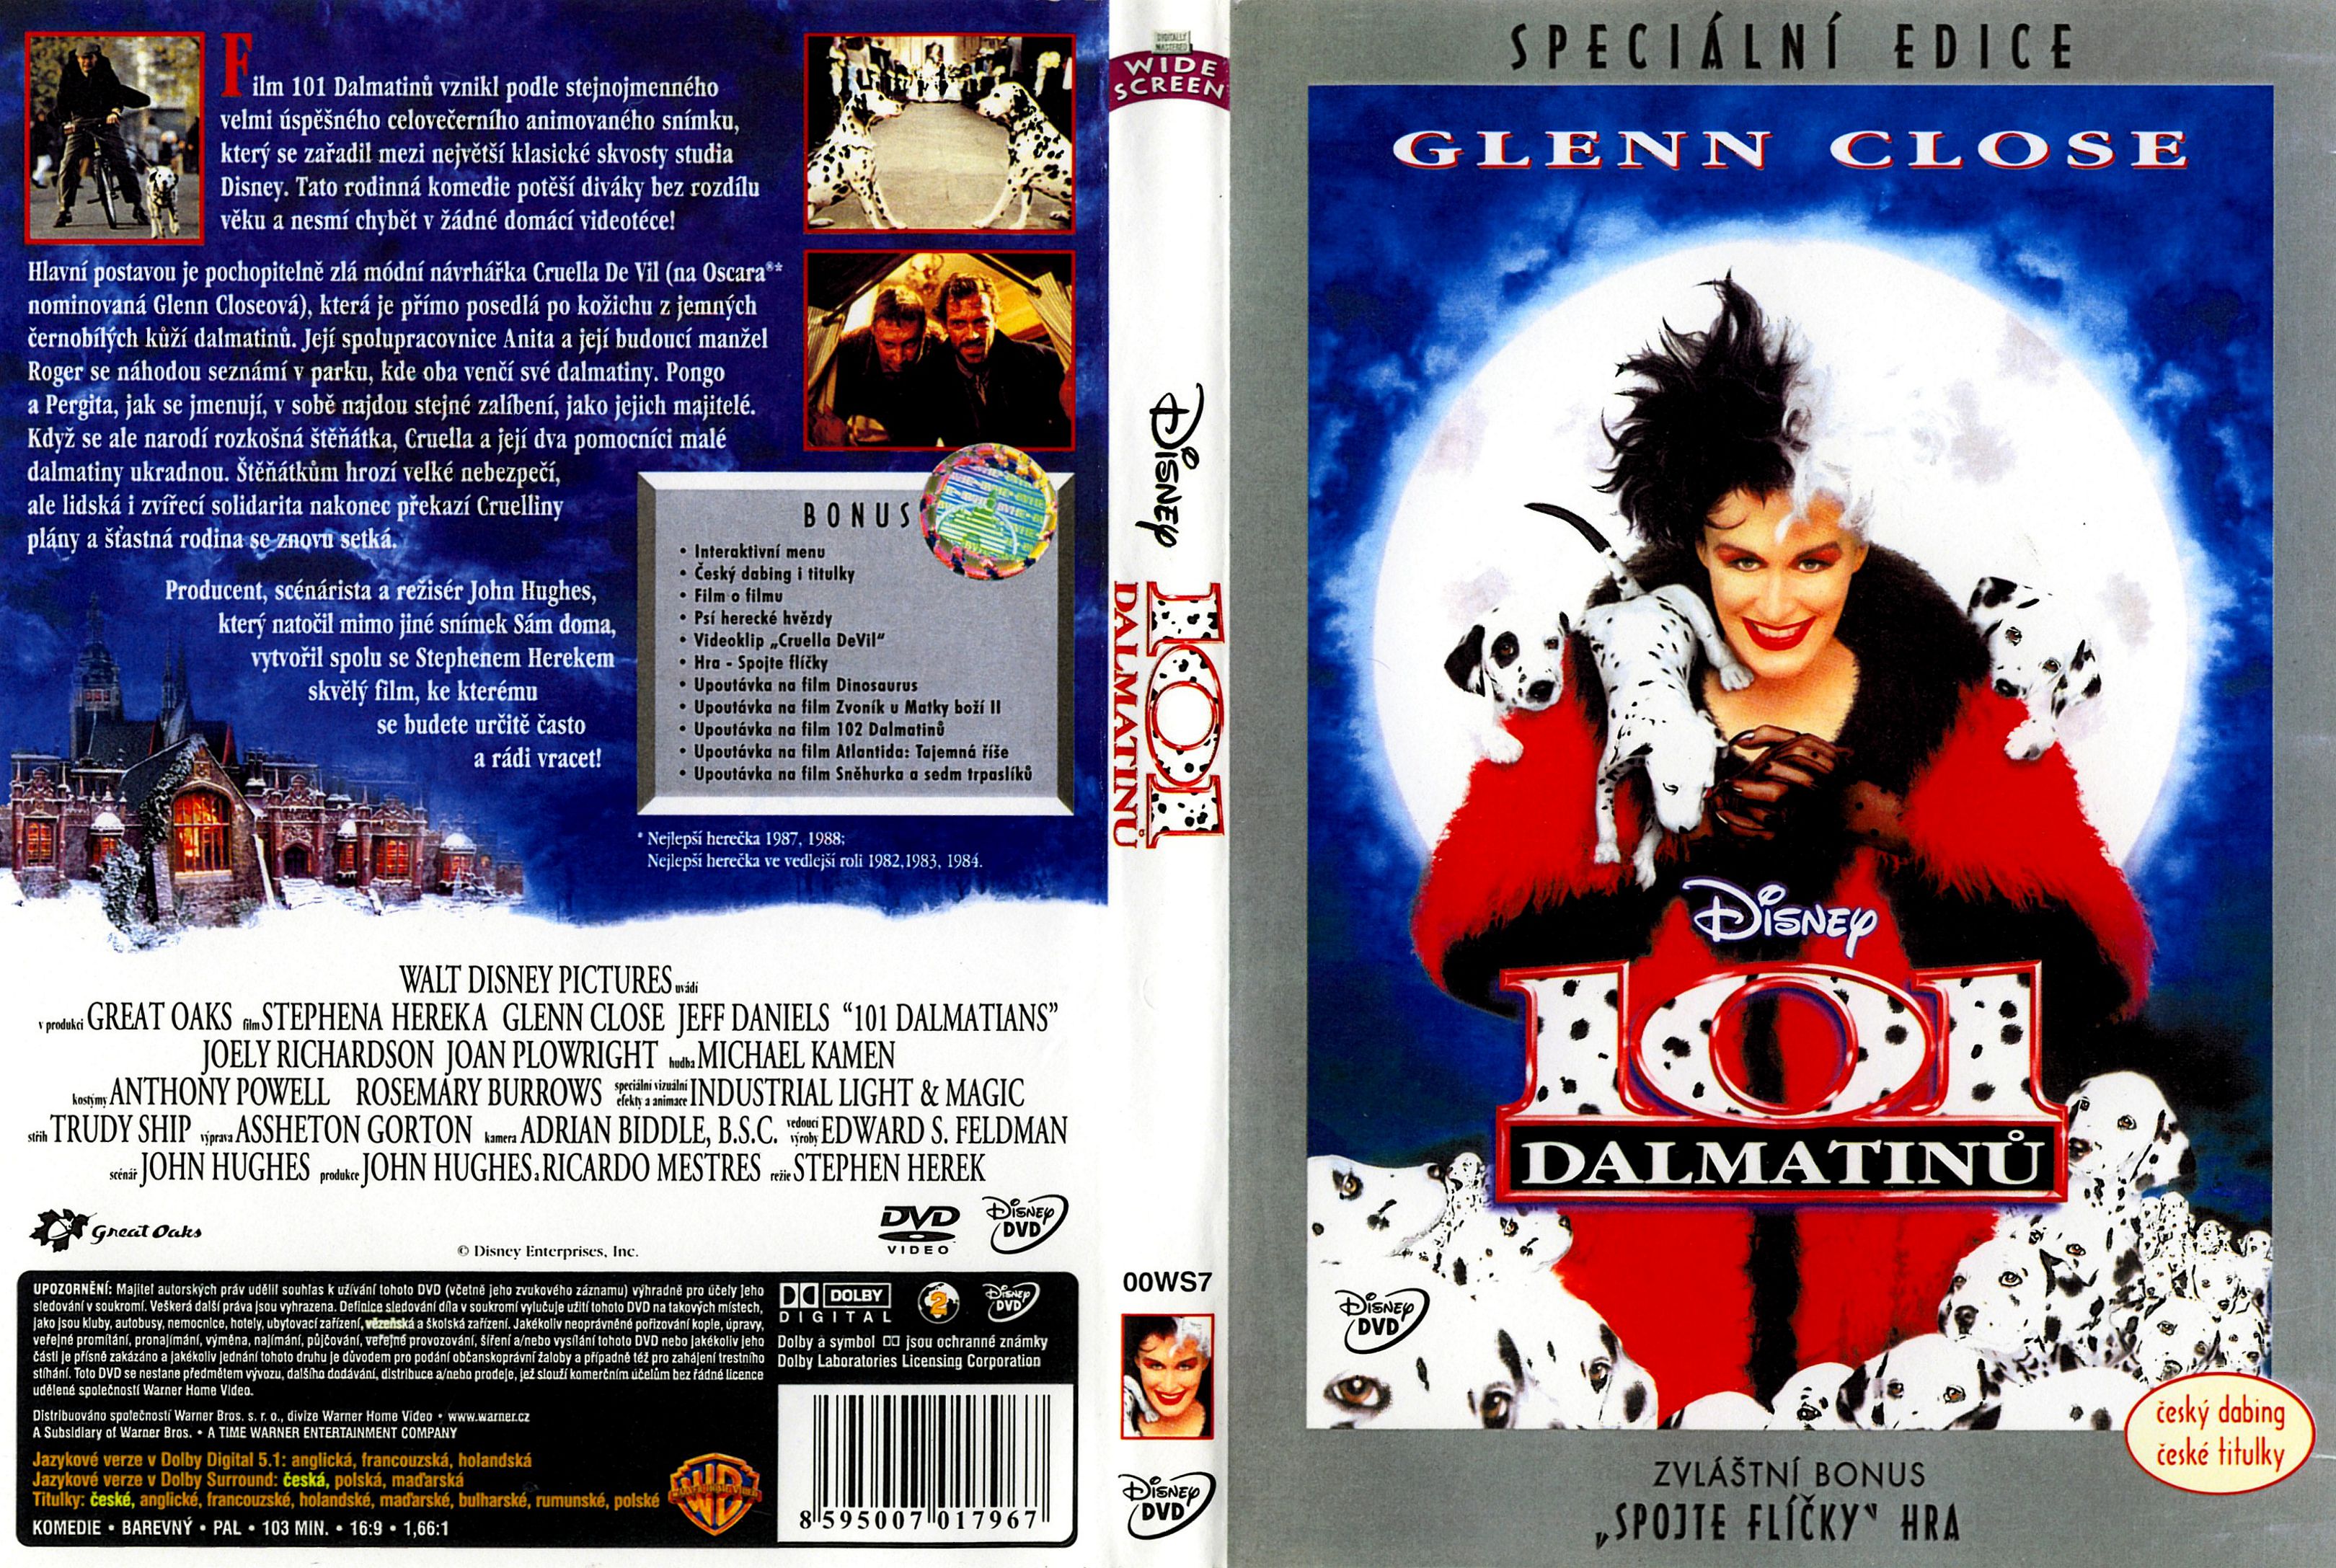 101 dalmatians 1996 dvd